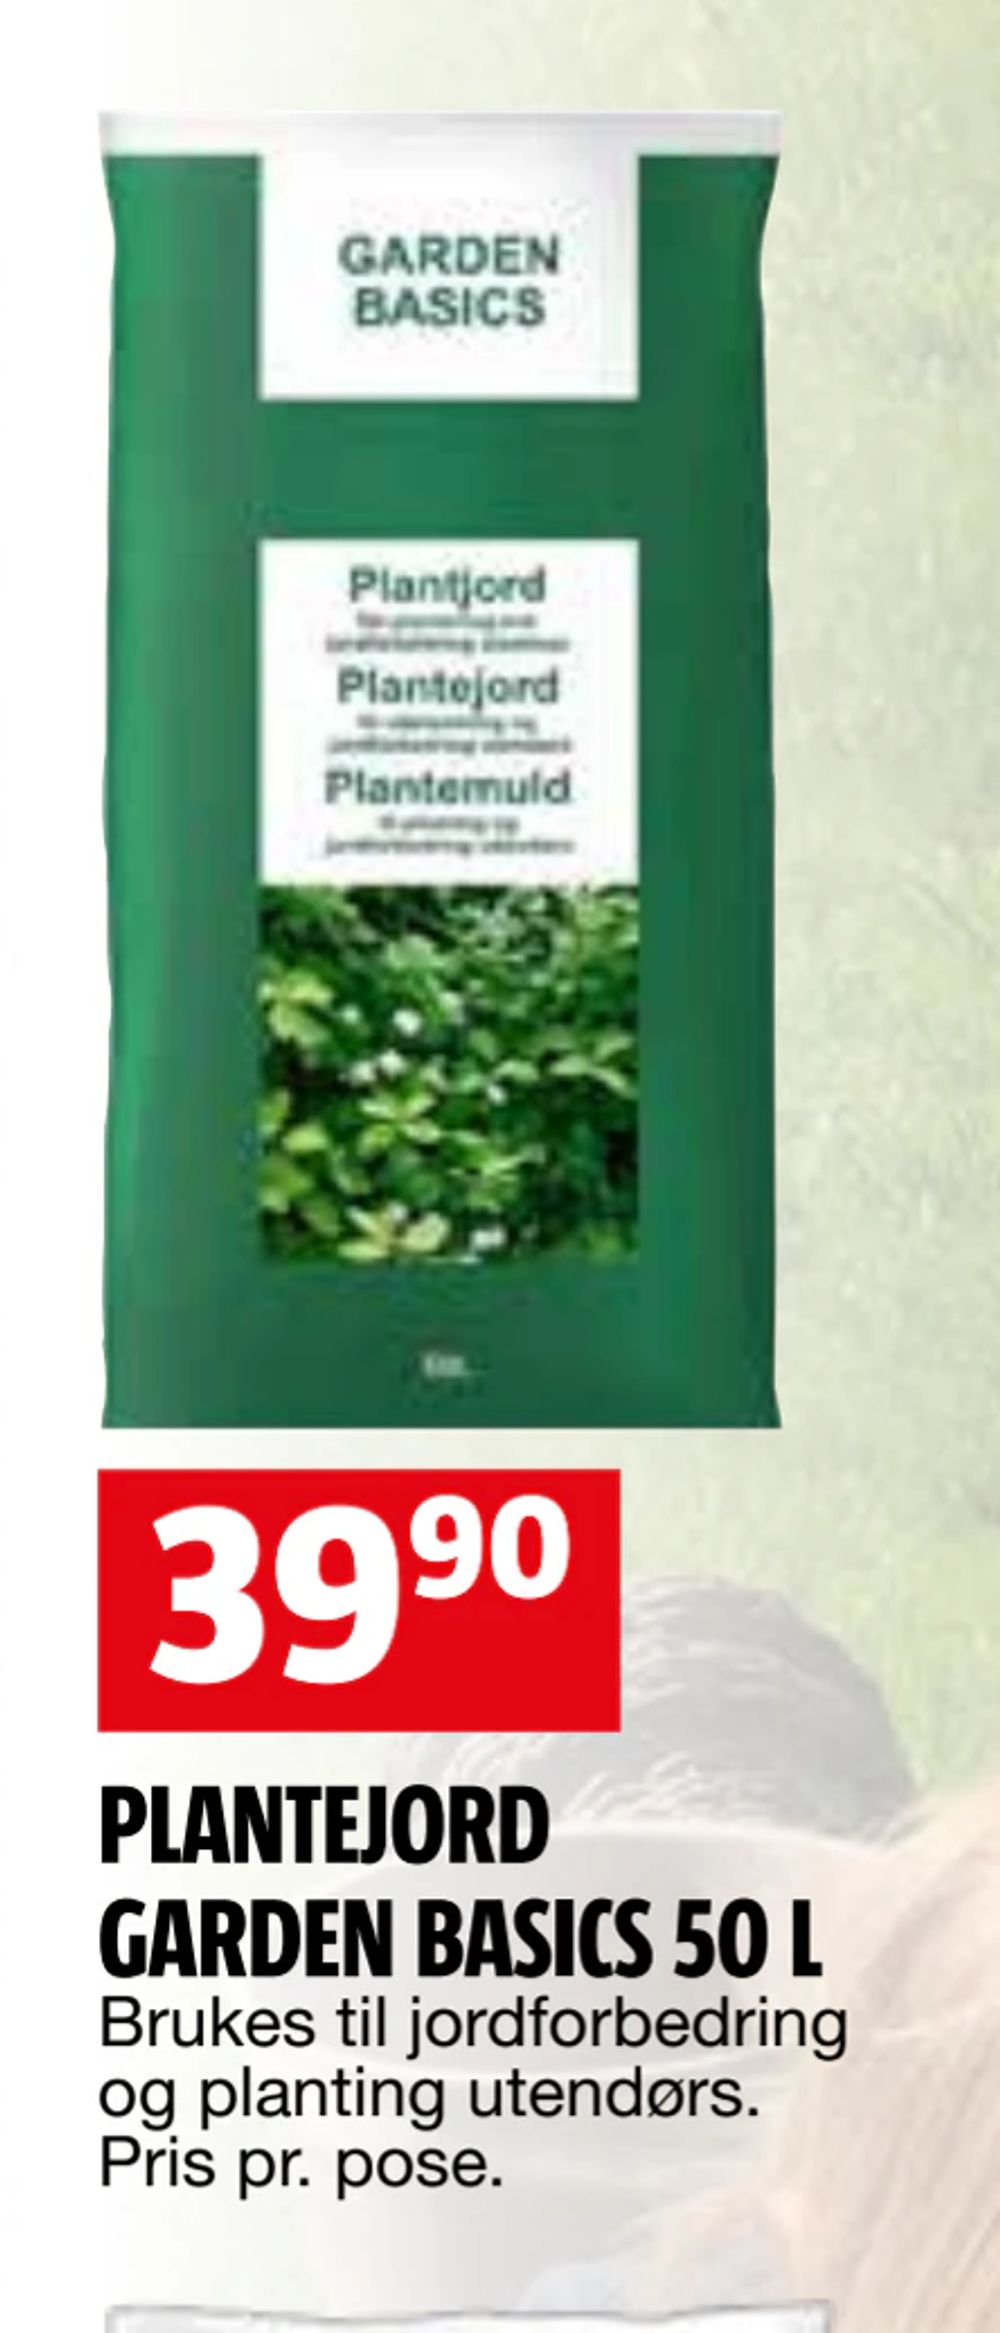 Tilbud på PLANTEJORD GARDEN BASICS 50 L fra BAUHAUS til 39,90 kr